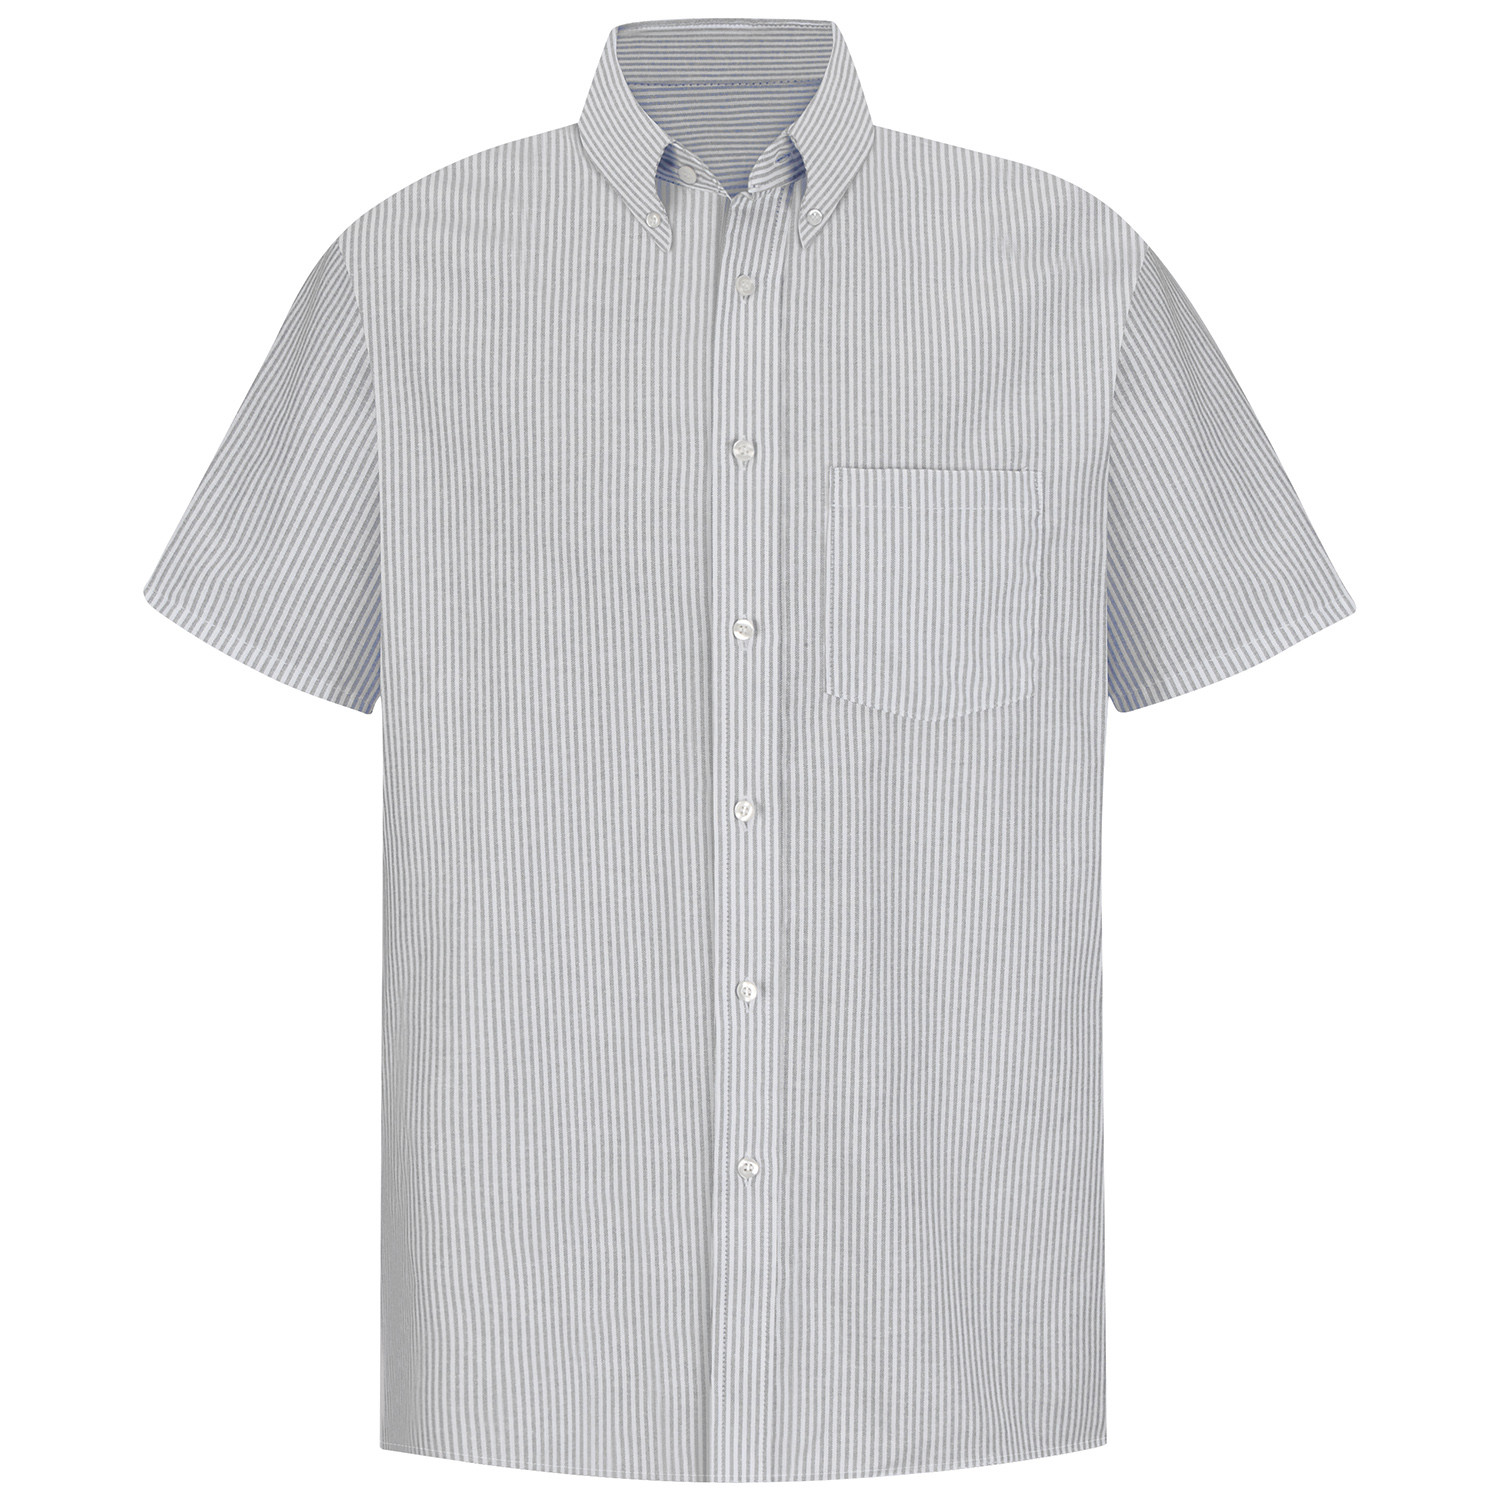 men's short sleeve white dress shirt clothing